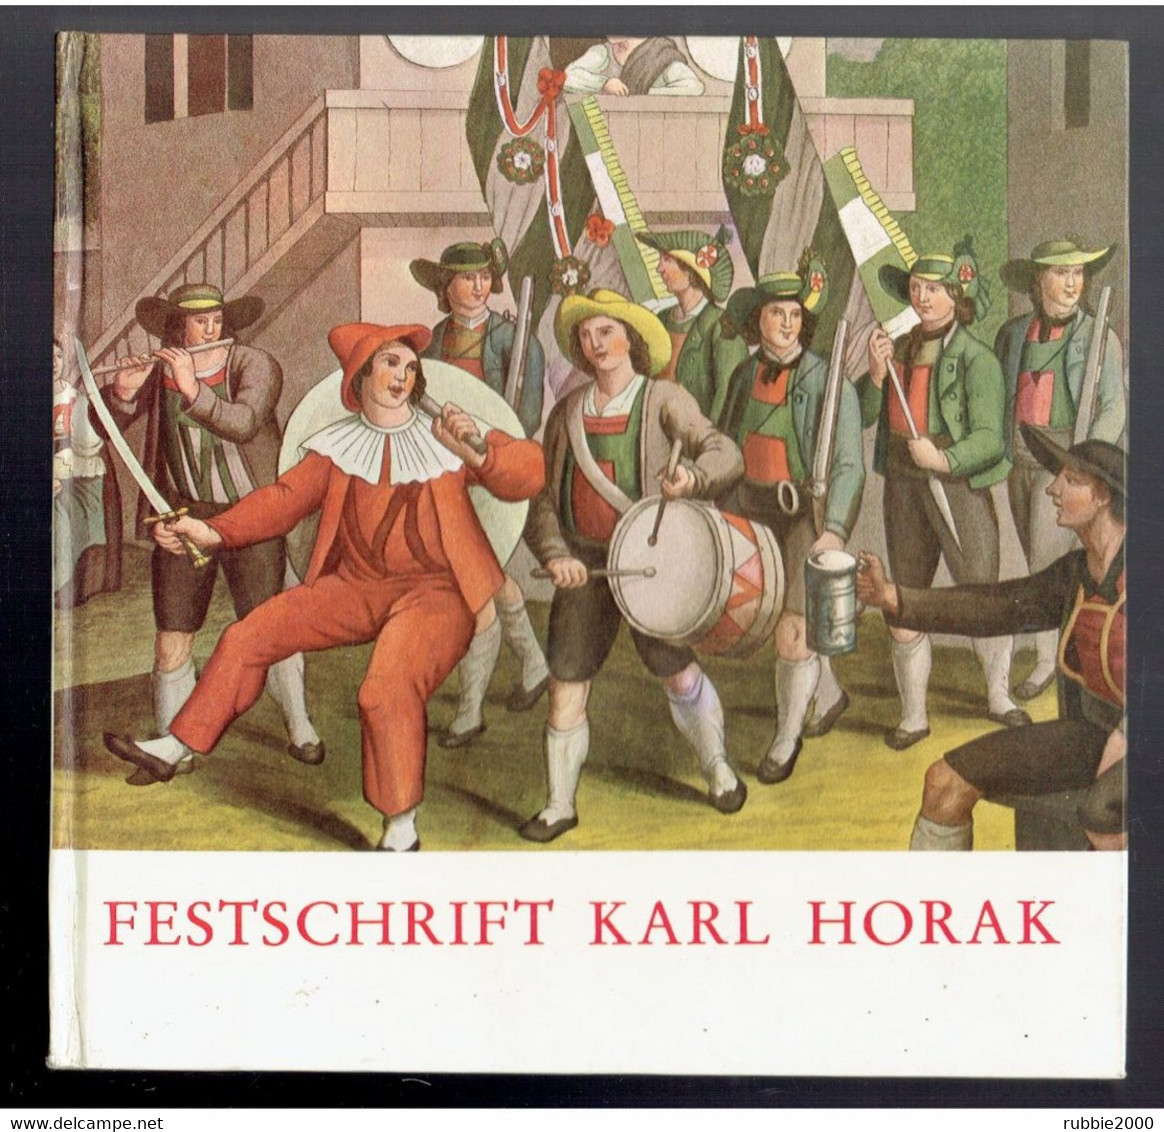 Festschrift Für Karl Horak. Herausgegeben Von Manfred Schneider Für Musikwissenschaften Der Universität Innsbruck 1980 - Musik